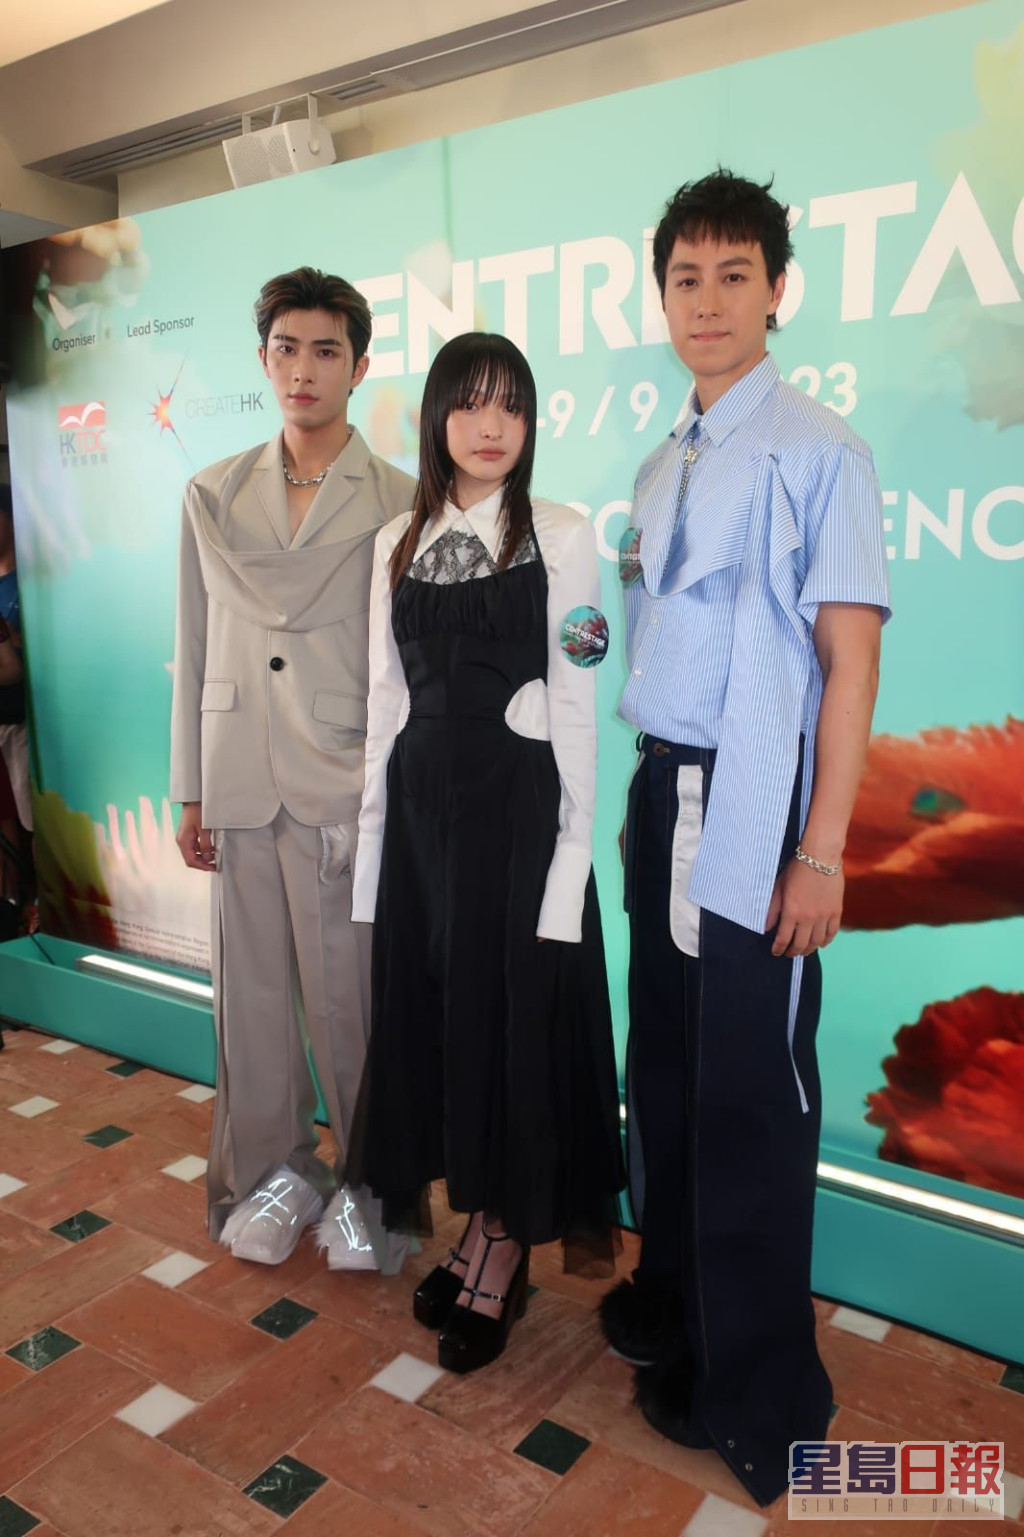 陈汉娜、P1X3L成员吴启洋及陈安立出席活动。